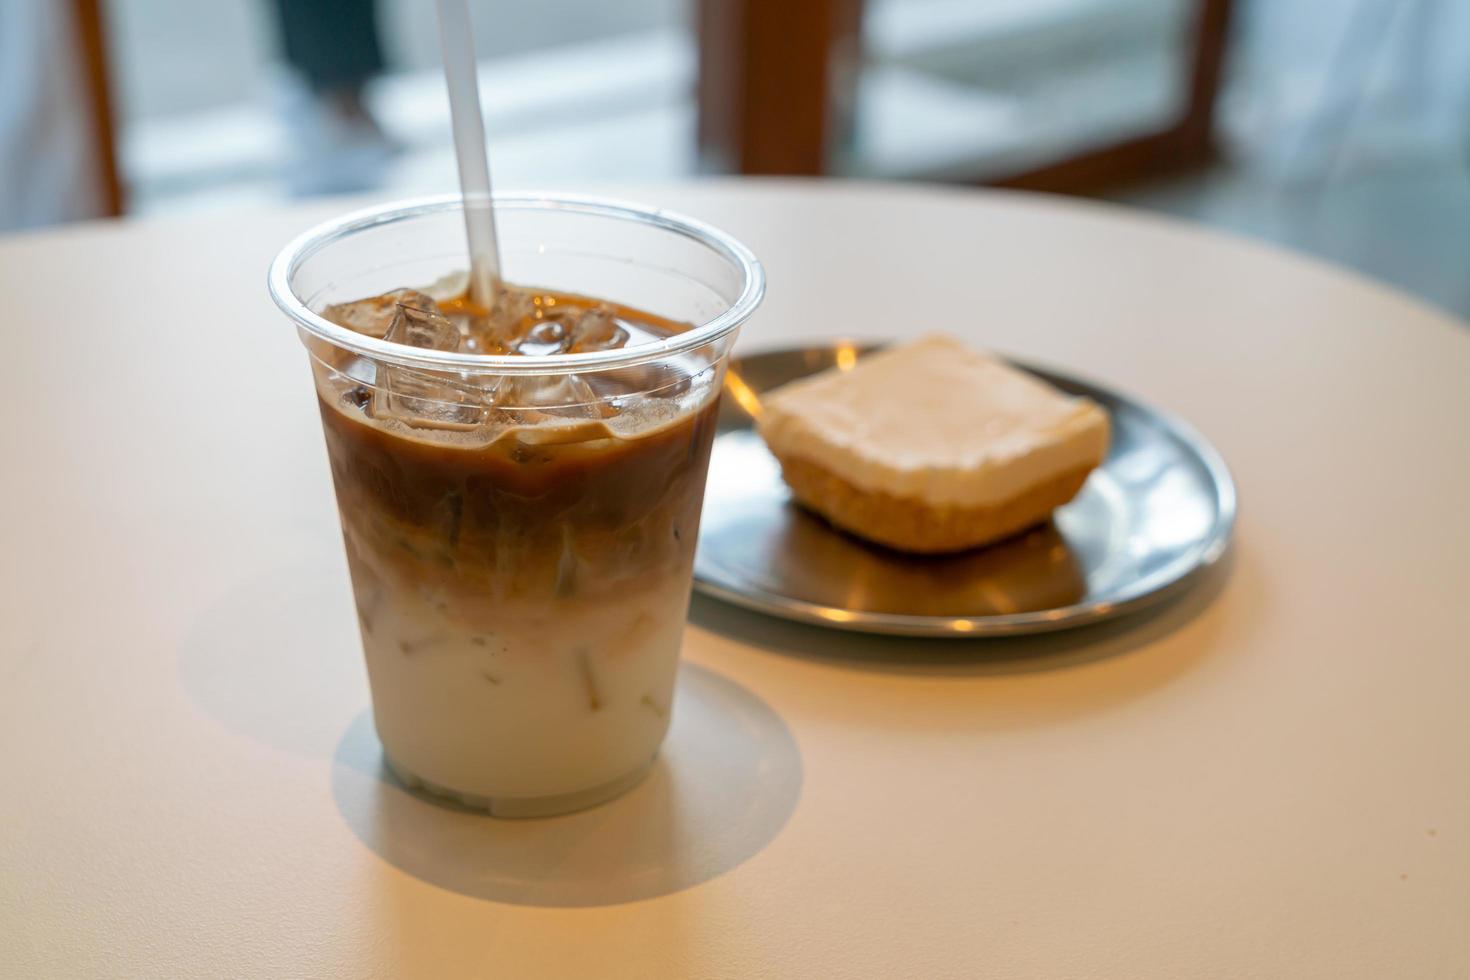 Taza de café con leche helado en la cafetería restaurante foto